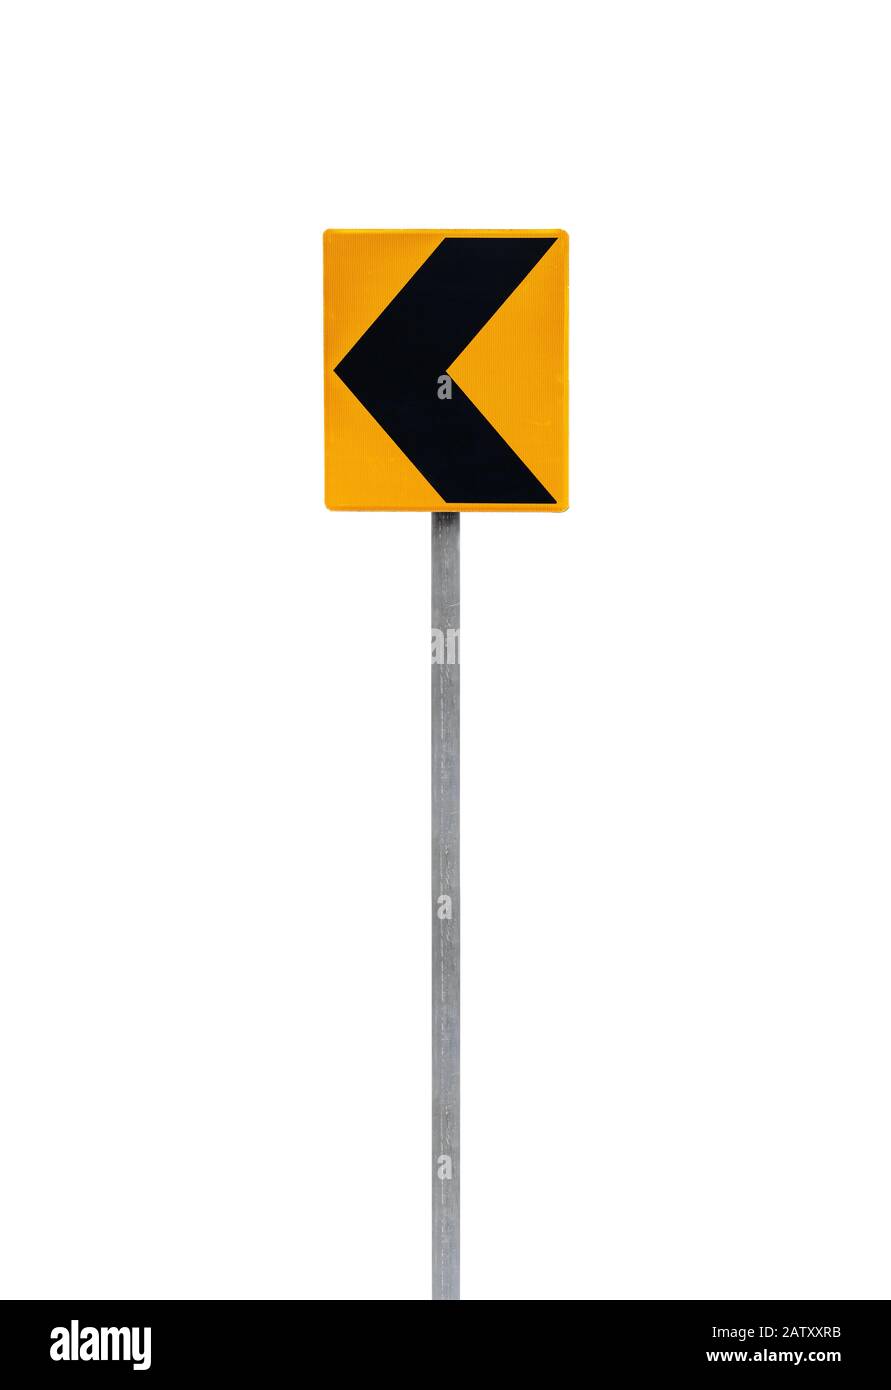 Gefährliche Abbiegung nach links, gelb-schwarzes Straßenschild auf einem Metallpfosten, der auf einem weißen, vertikalen Foto isoliert ist Stockfoto